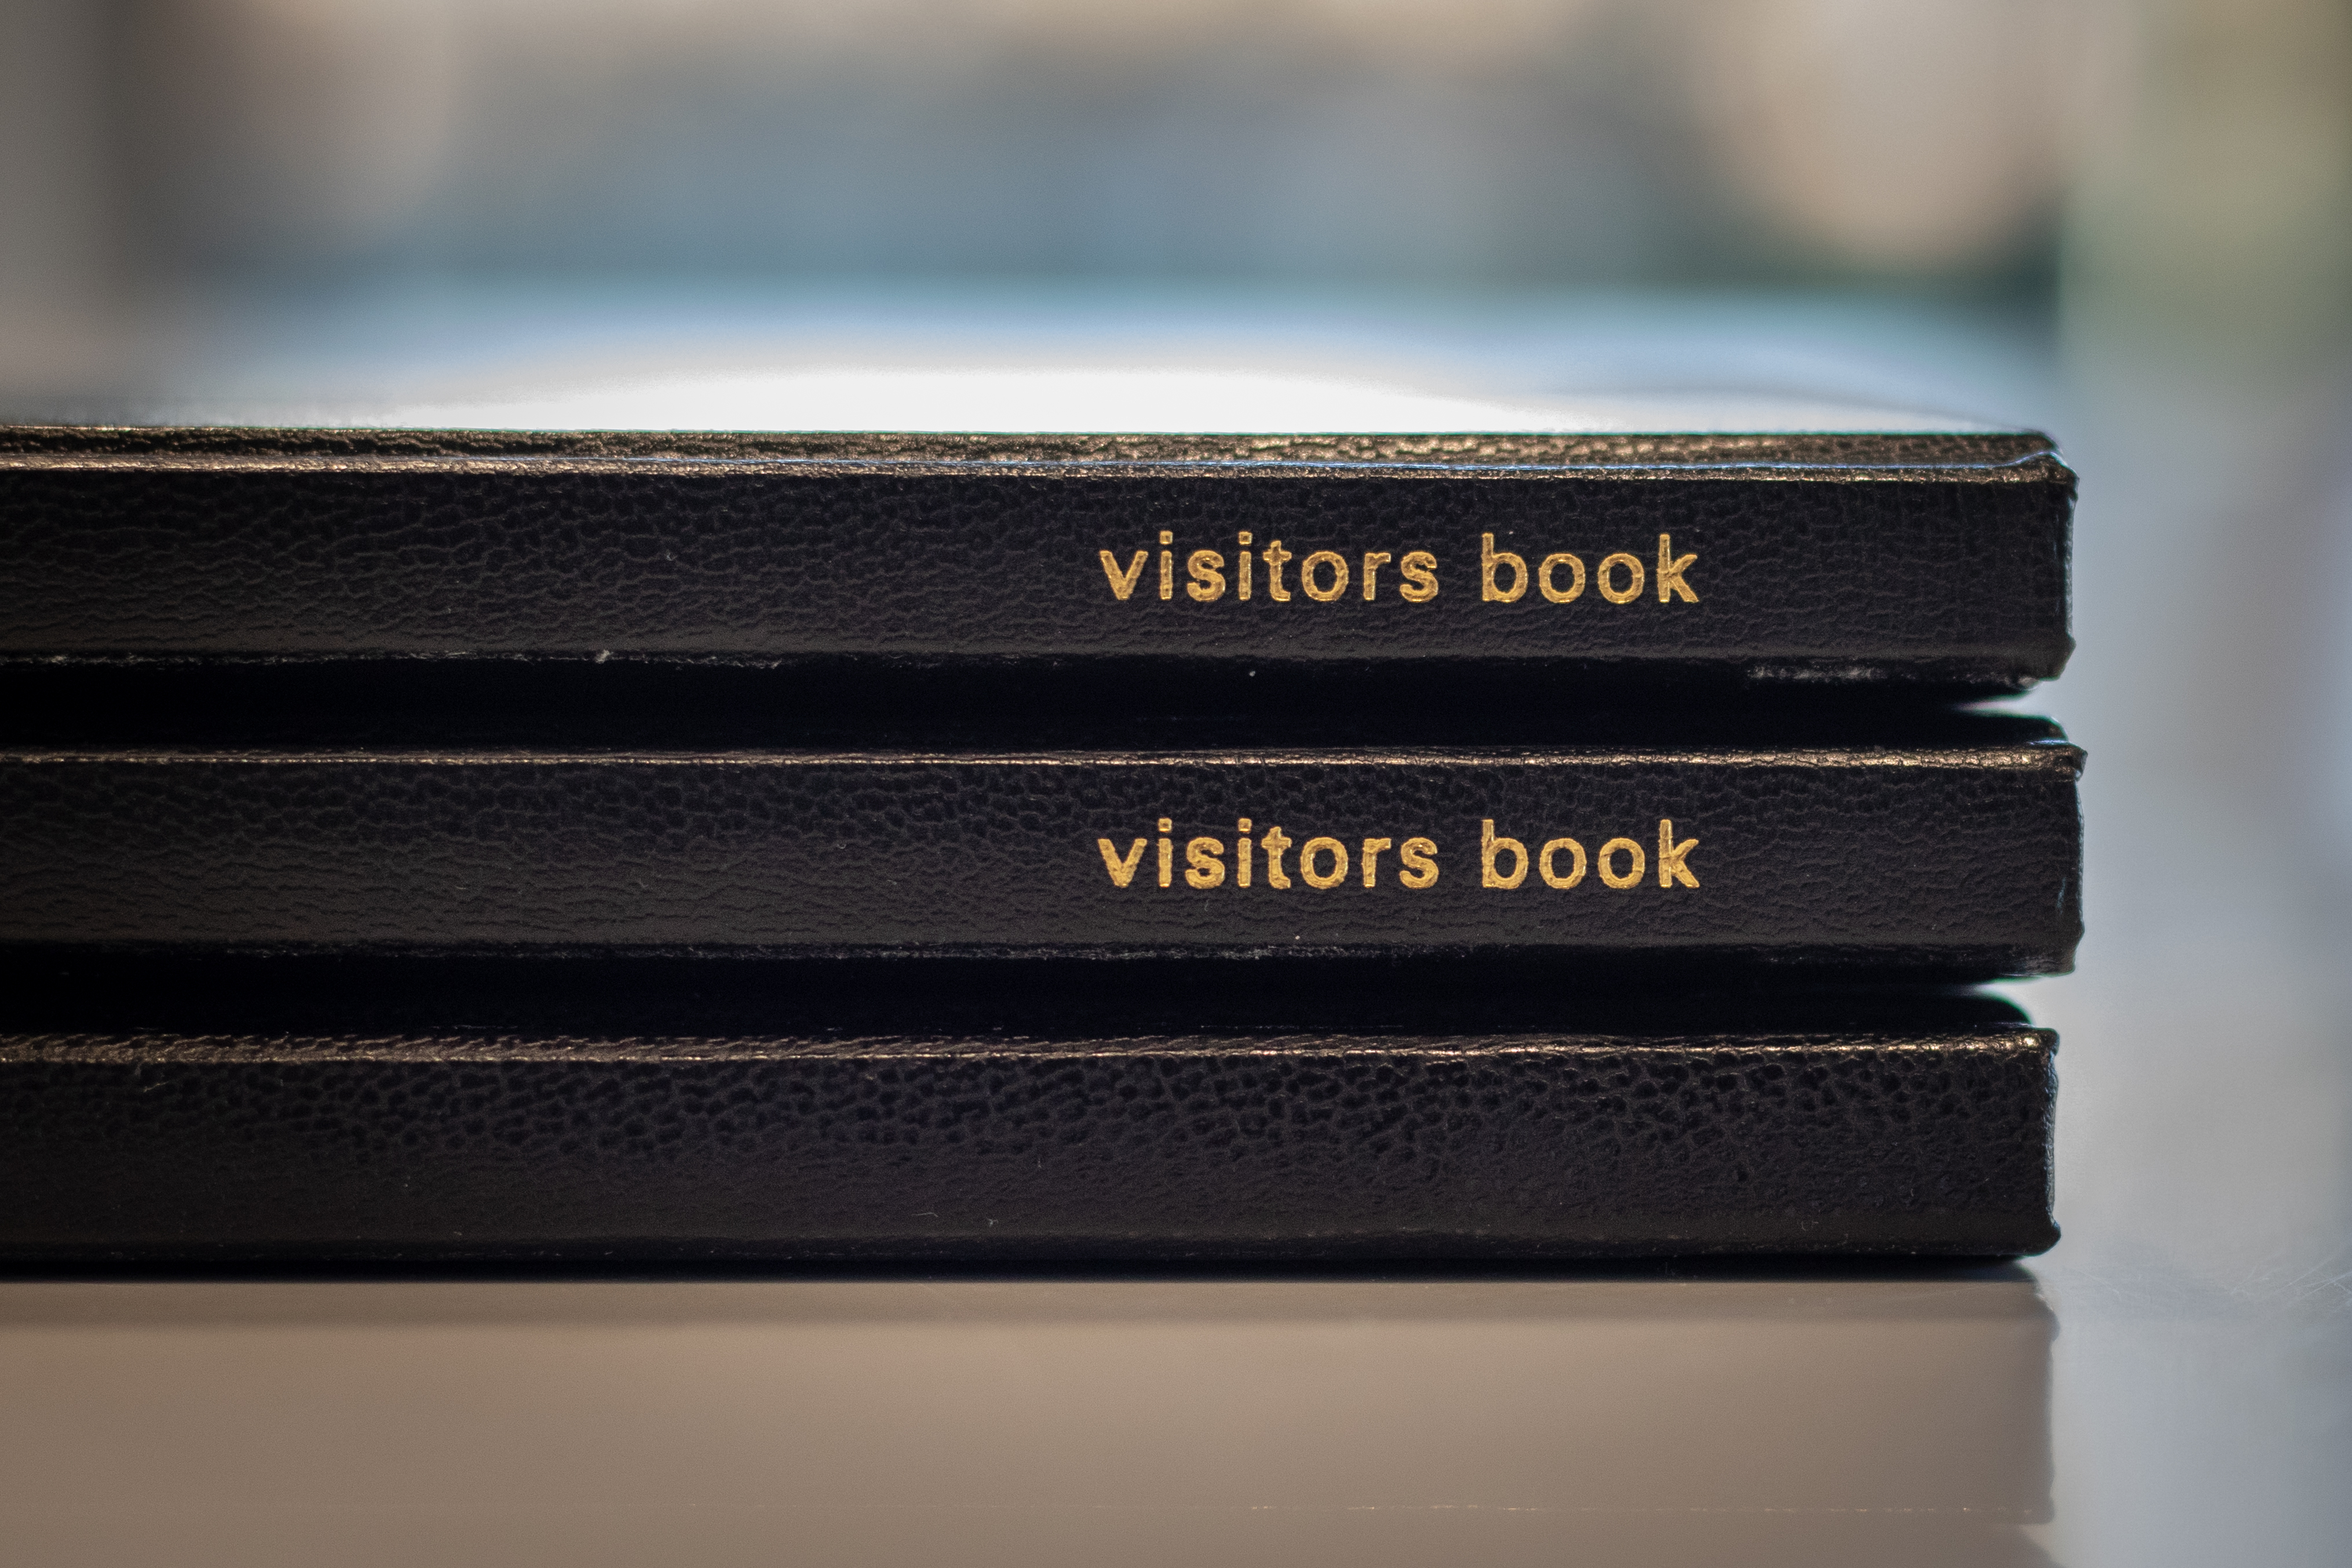 Libros de visitas en la recepción | Fuente: Shutterstock